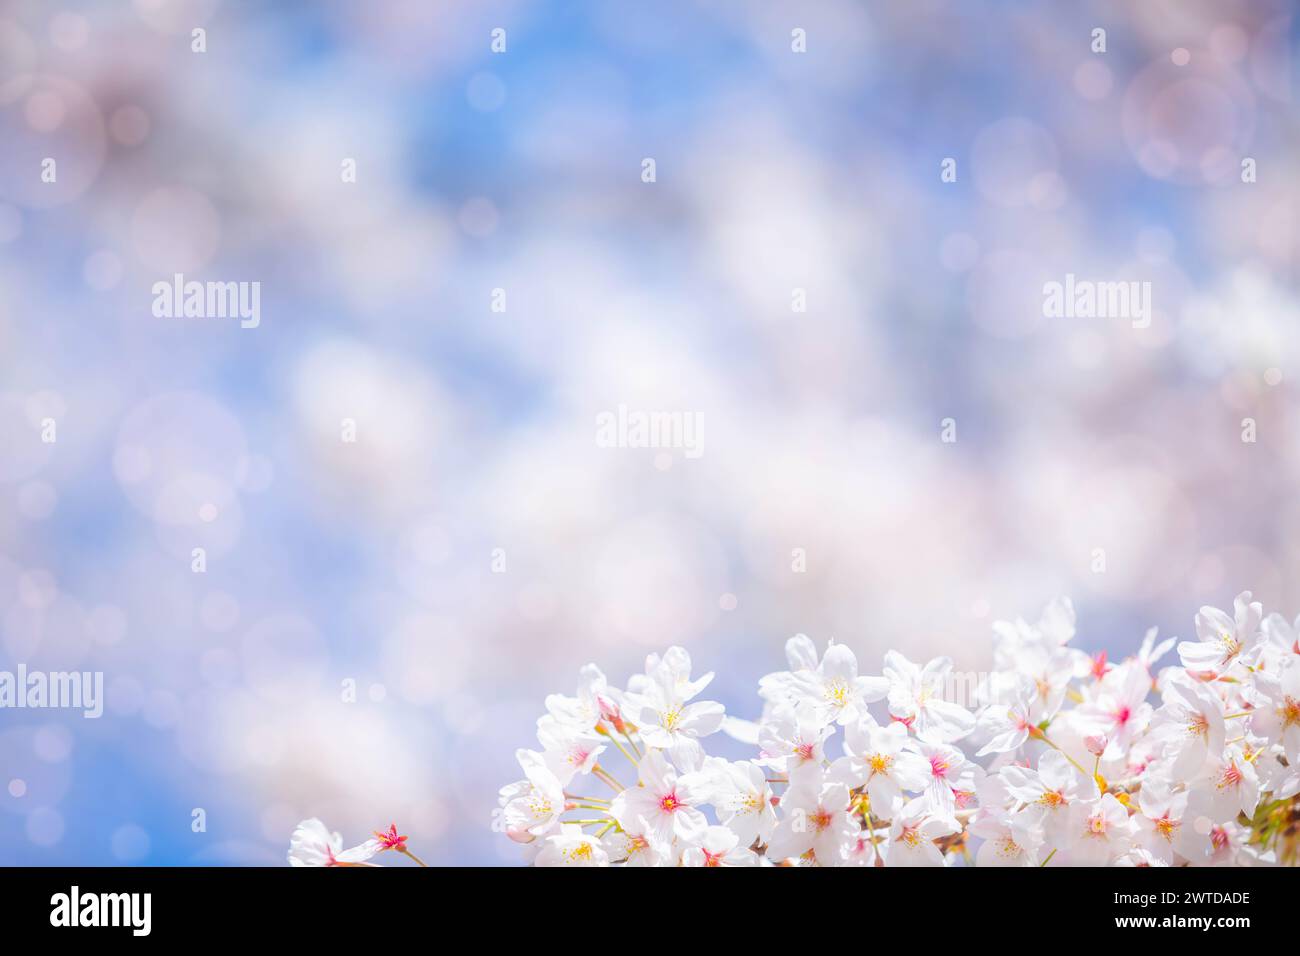 fleurs de sakura (fleur de cerisier) de couleur rose sur fond ensoleillé. Beau fond de printemps de la nature avec une branche de sakura en fleurs. Banque D'Images